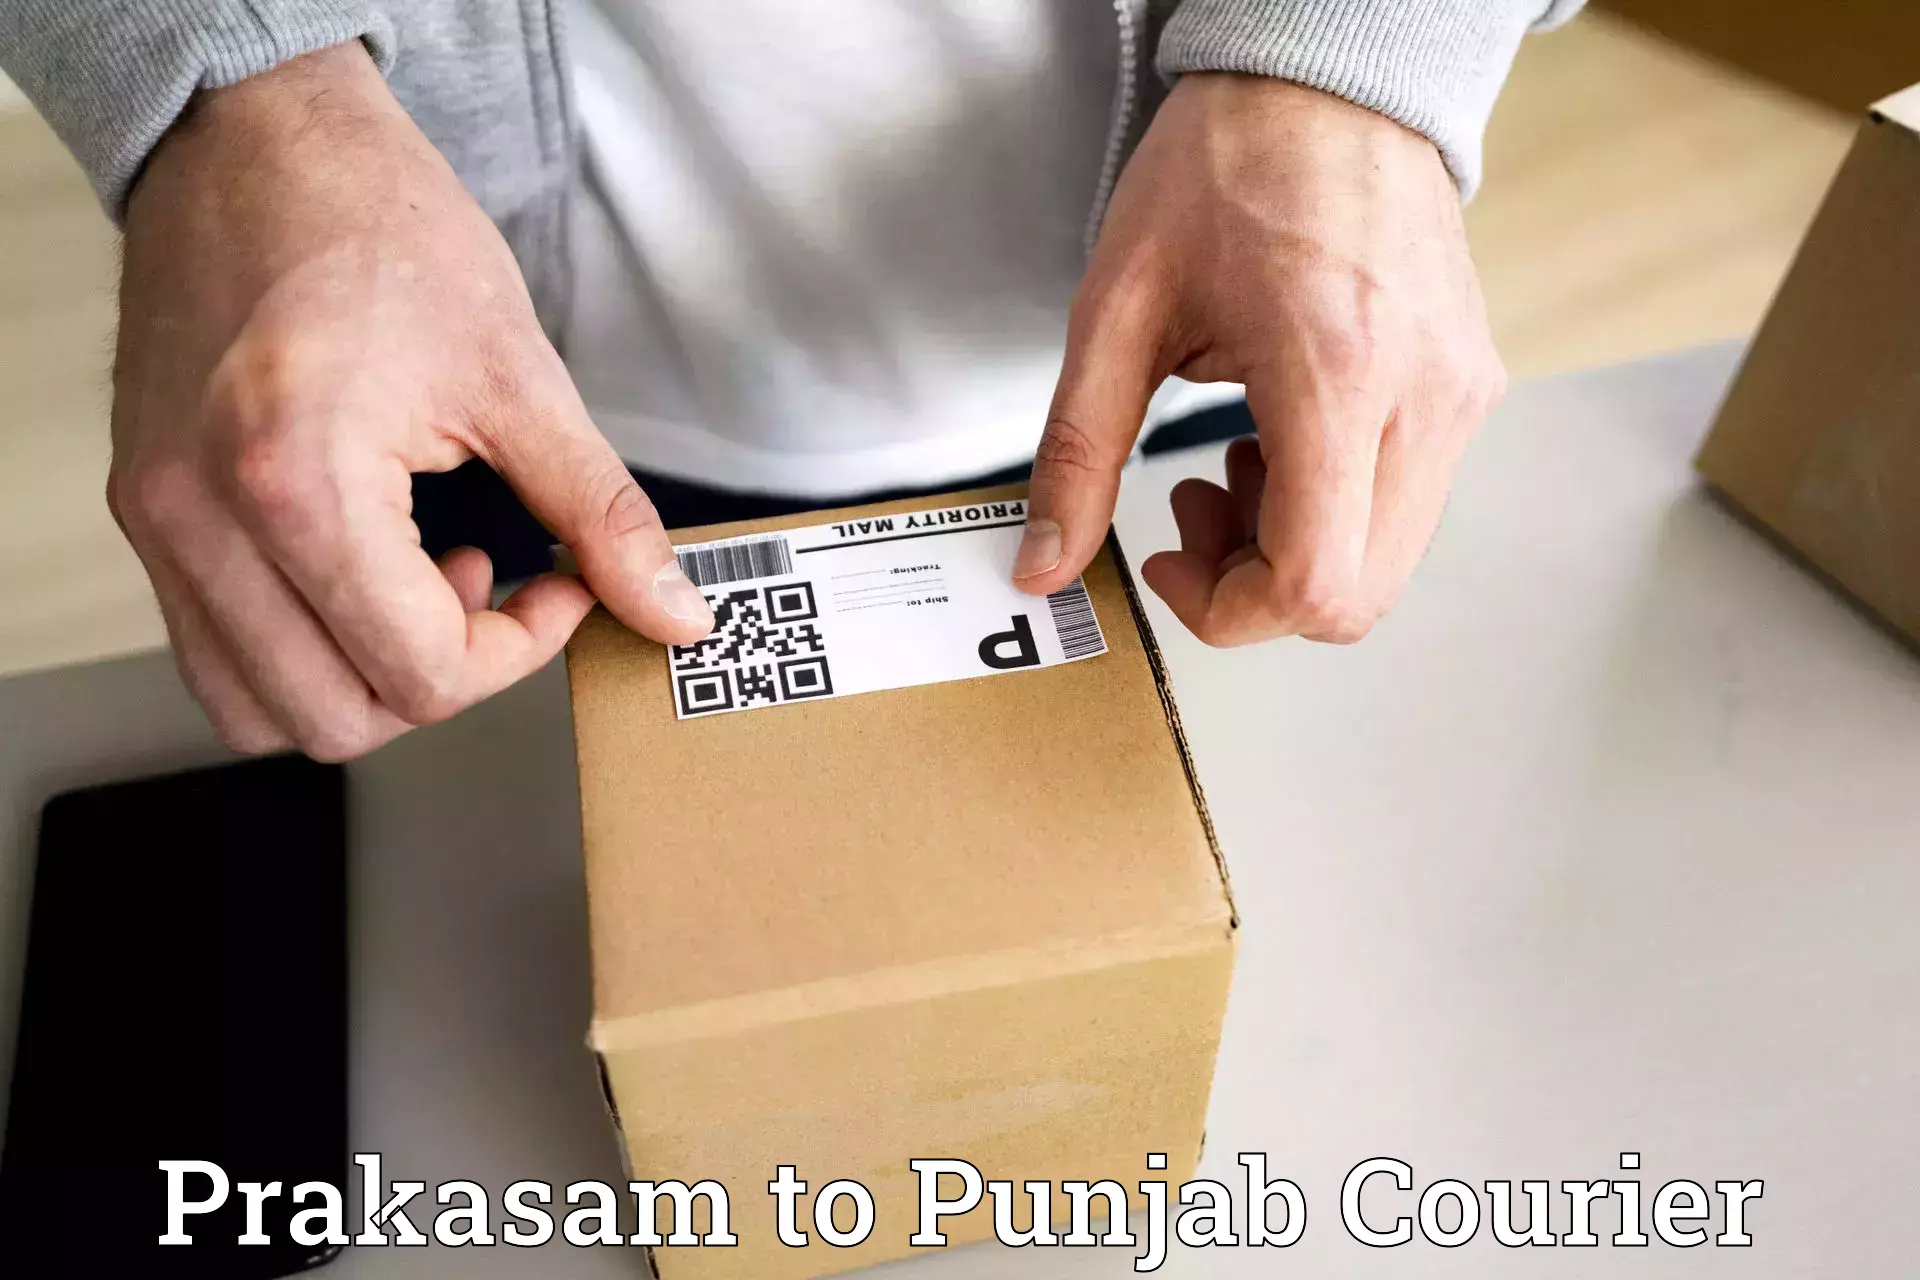 Quick parcel dispatch Prakasam to Punjab